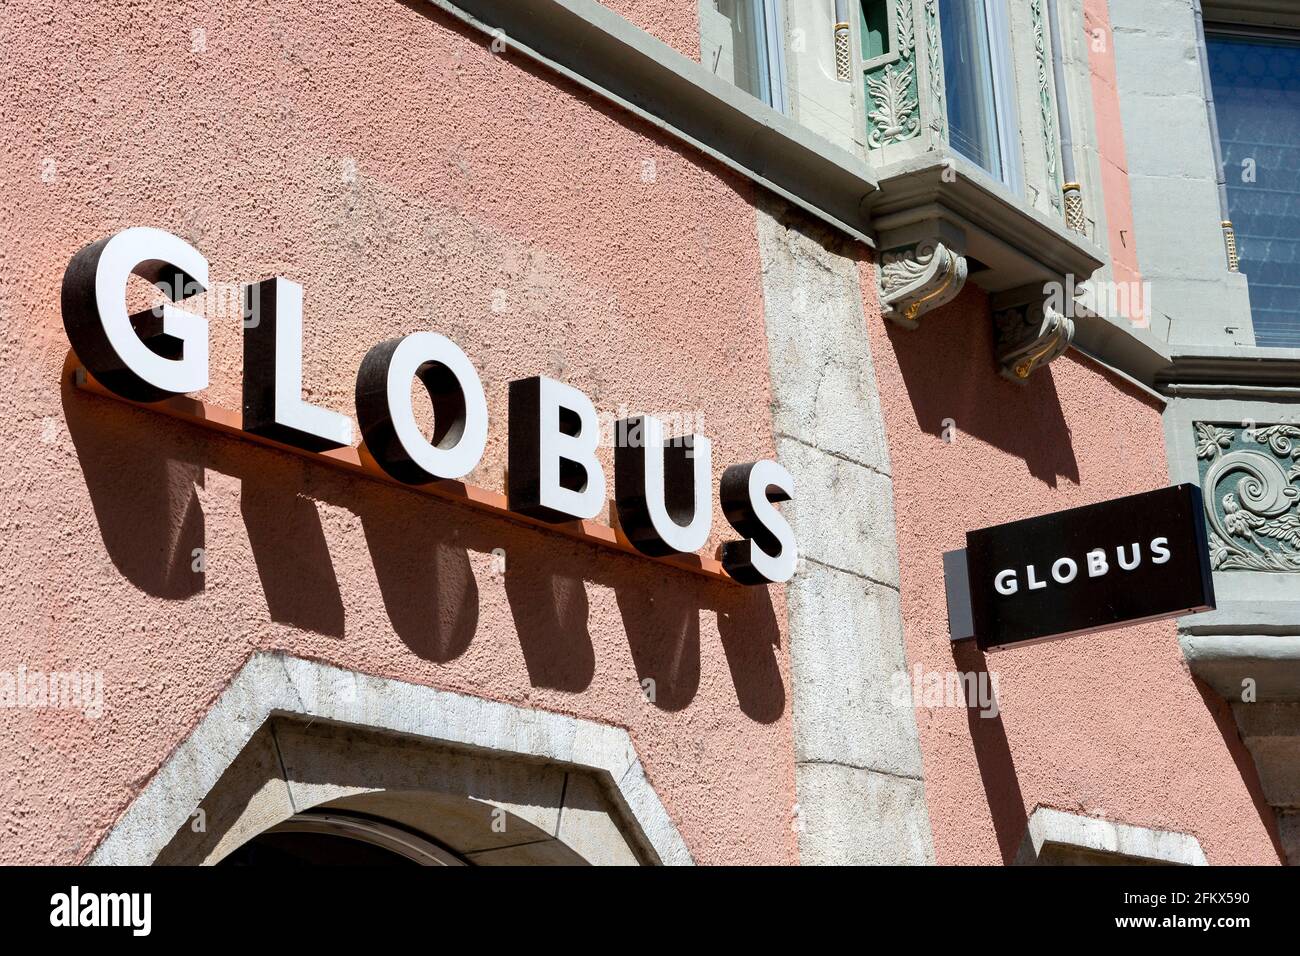 Globus, Women And Men?s Fashion, Switzerland Stock Photo